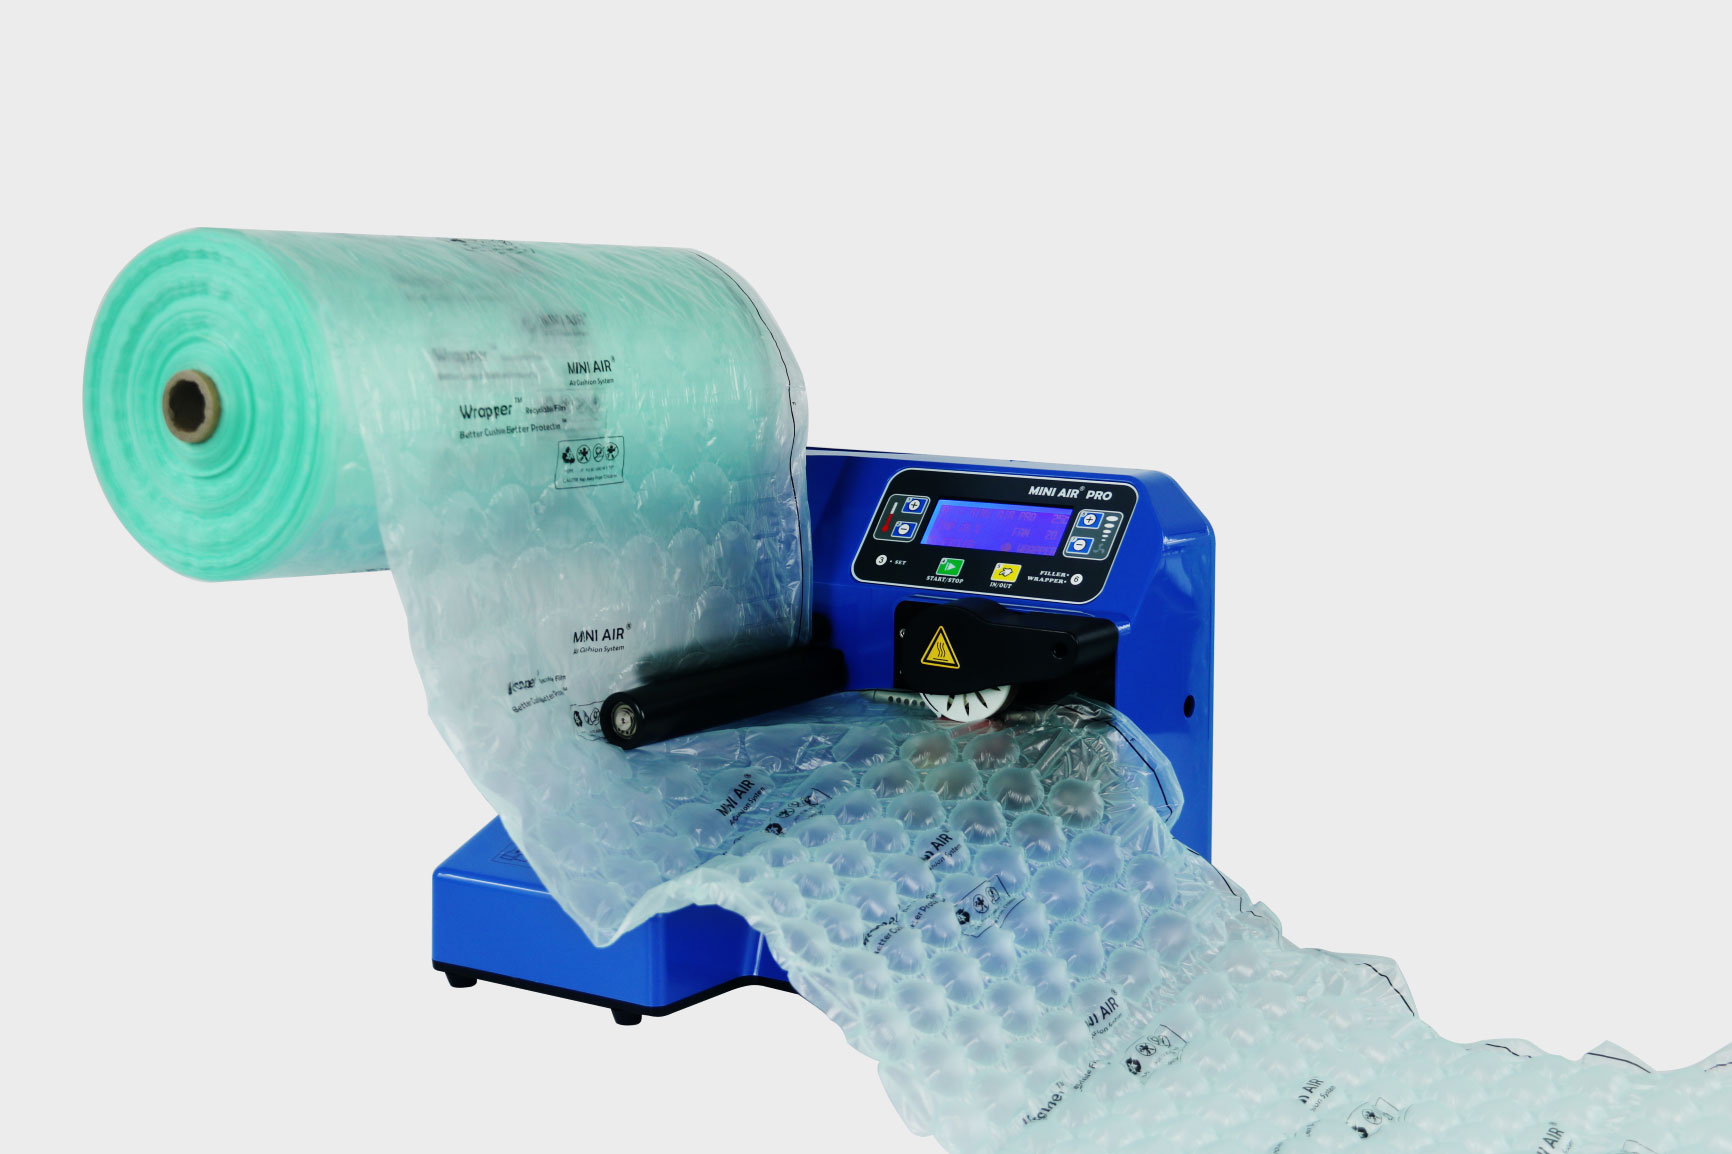 新機種 スマートパックSM-06 専用フィルム 緩衝材製造機 梱包 エアクッション マールス (ピロー20×15 4巻) 梱包、テープ